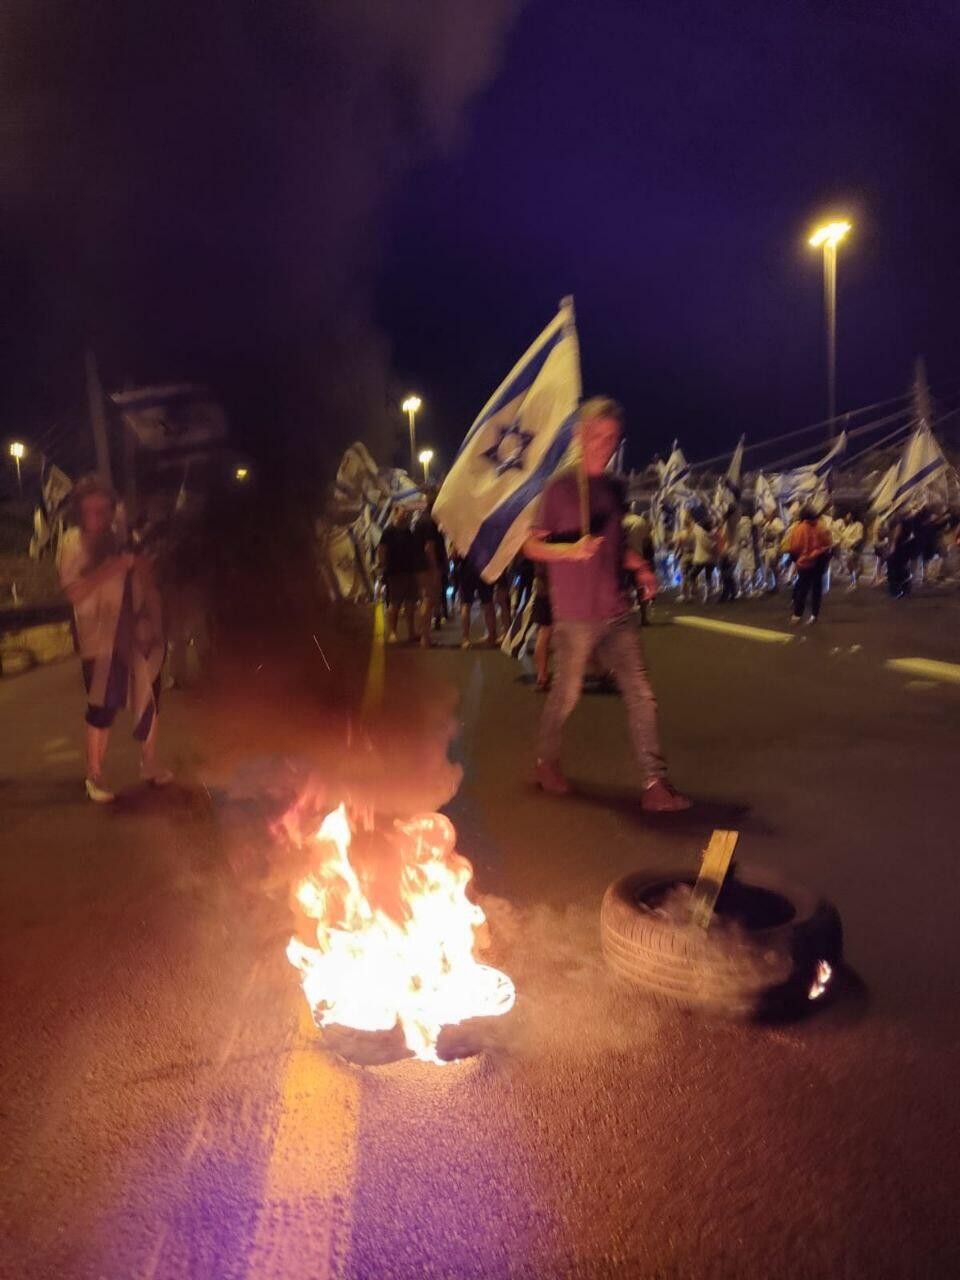 احتجاجات في إسرائيل